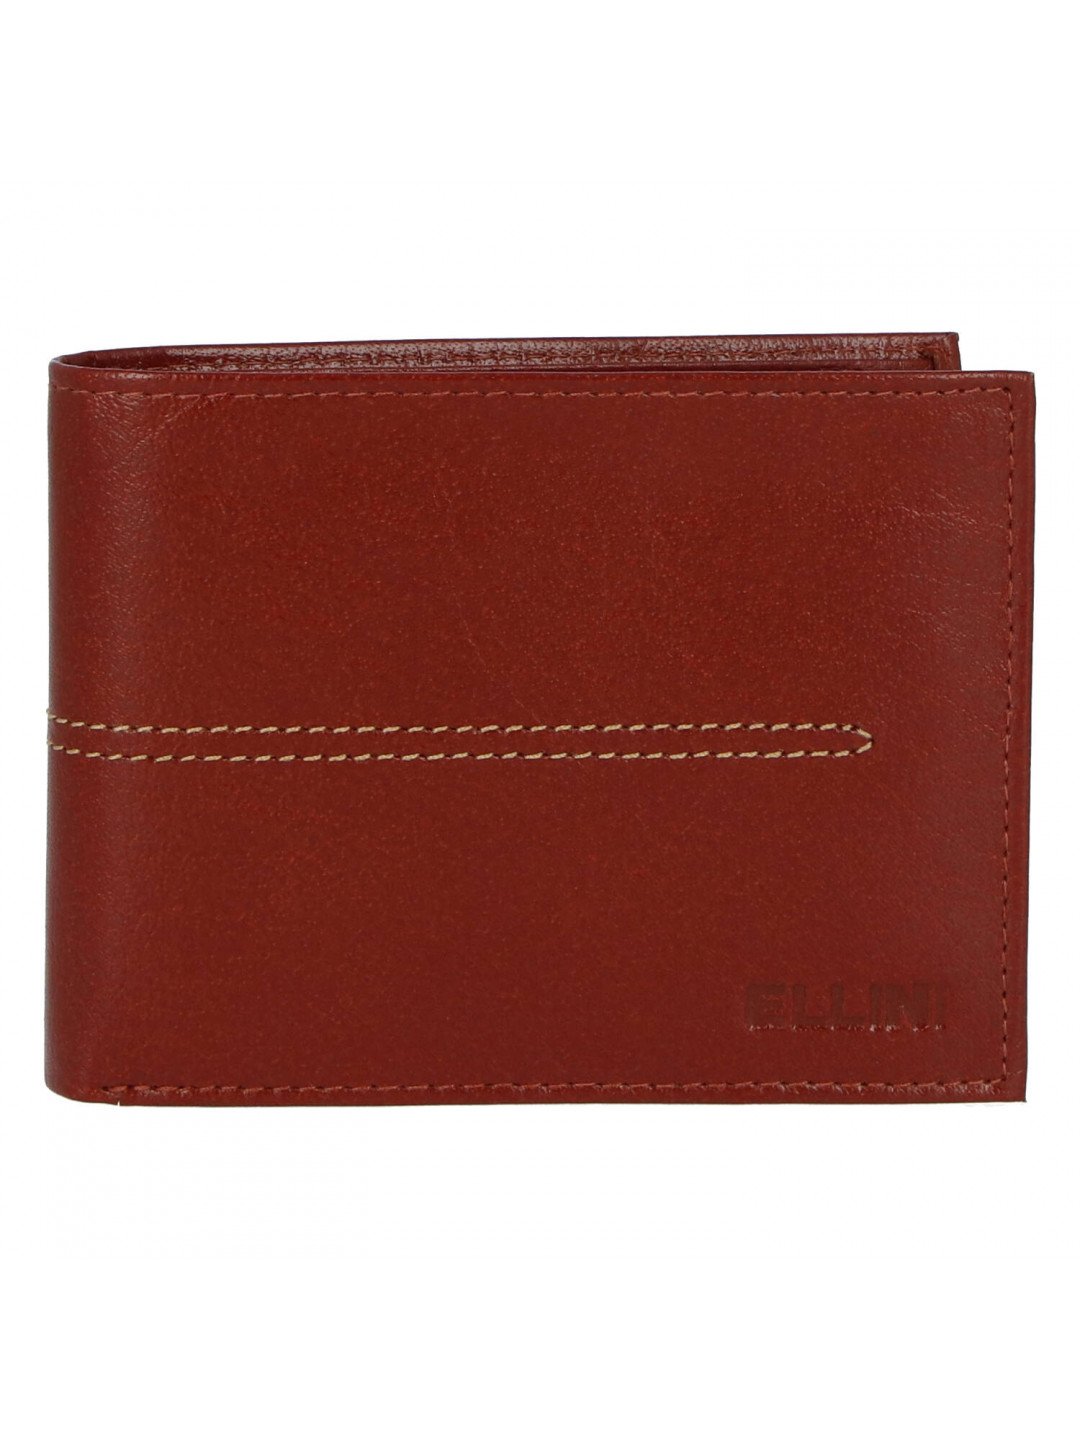 Elegantní pánská koženková peněženka Ellini Sasha hnědá